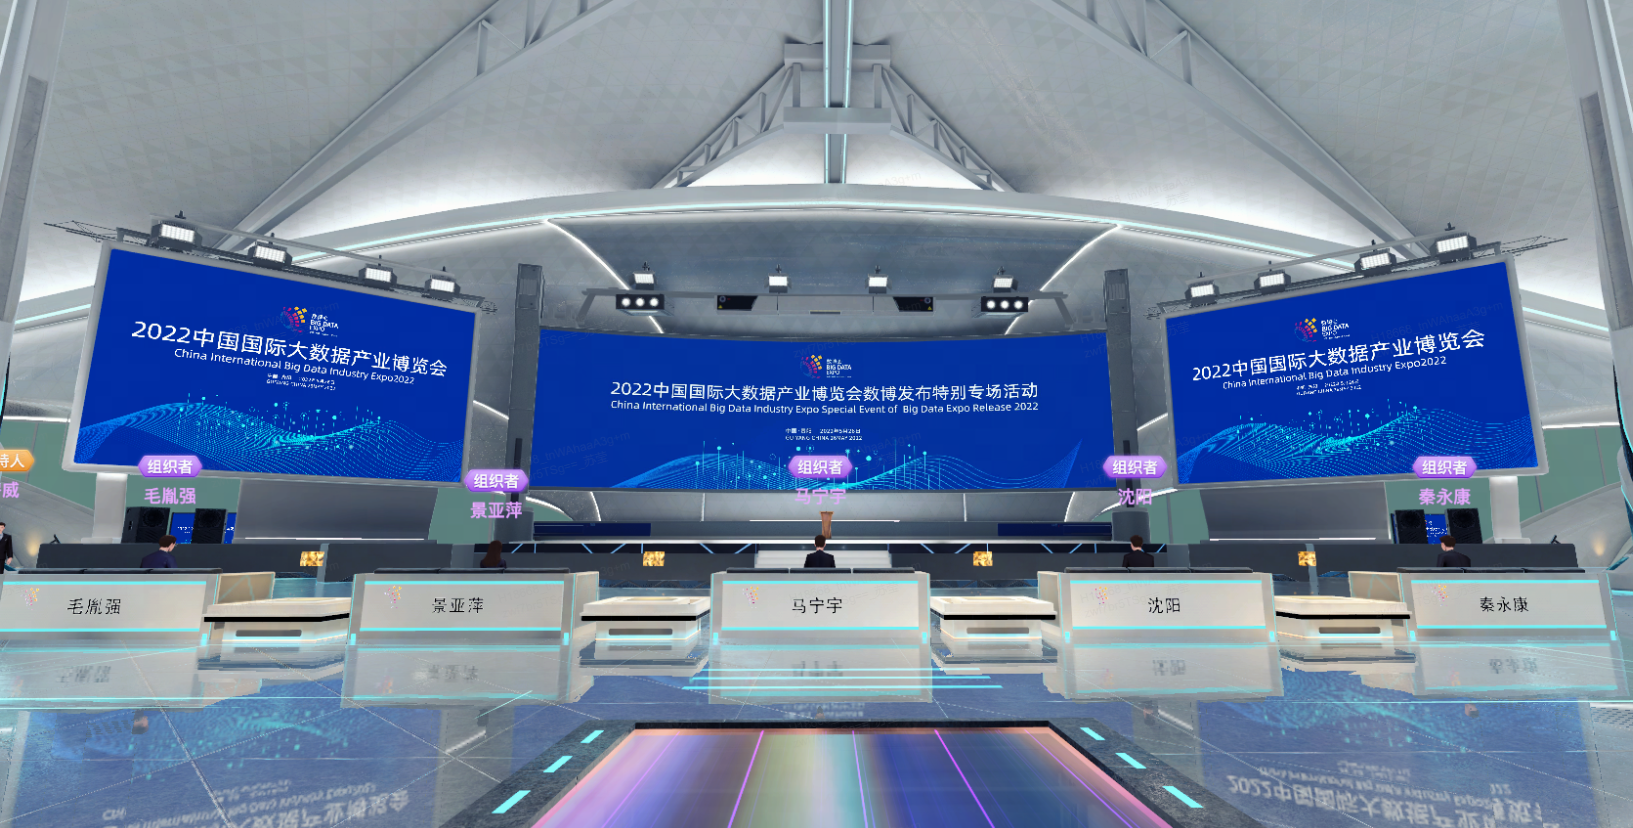 这是一张现代化会议中心的图片，内有屏幕展示2022年信息，前方设有讲台和多排座椅，设计现代，色调以蓝白为主。